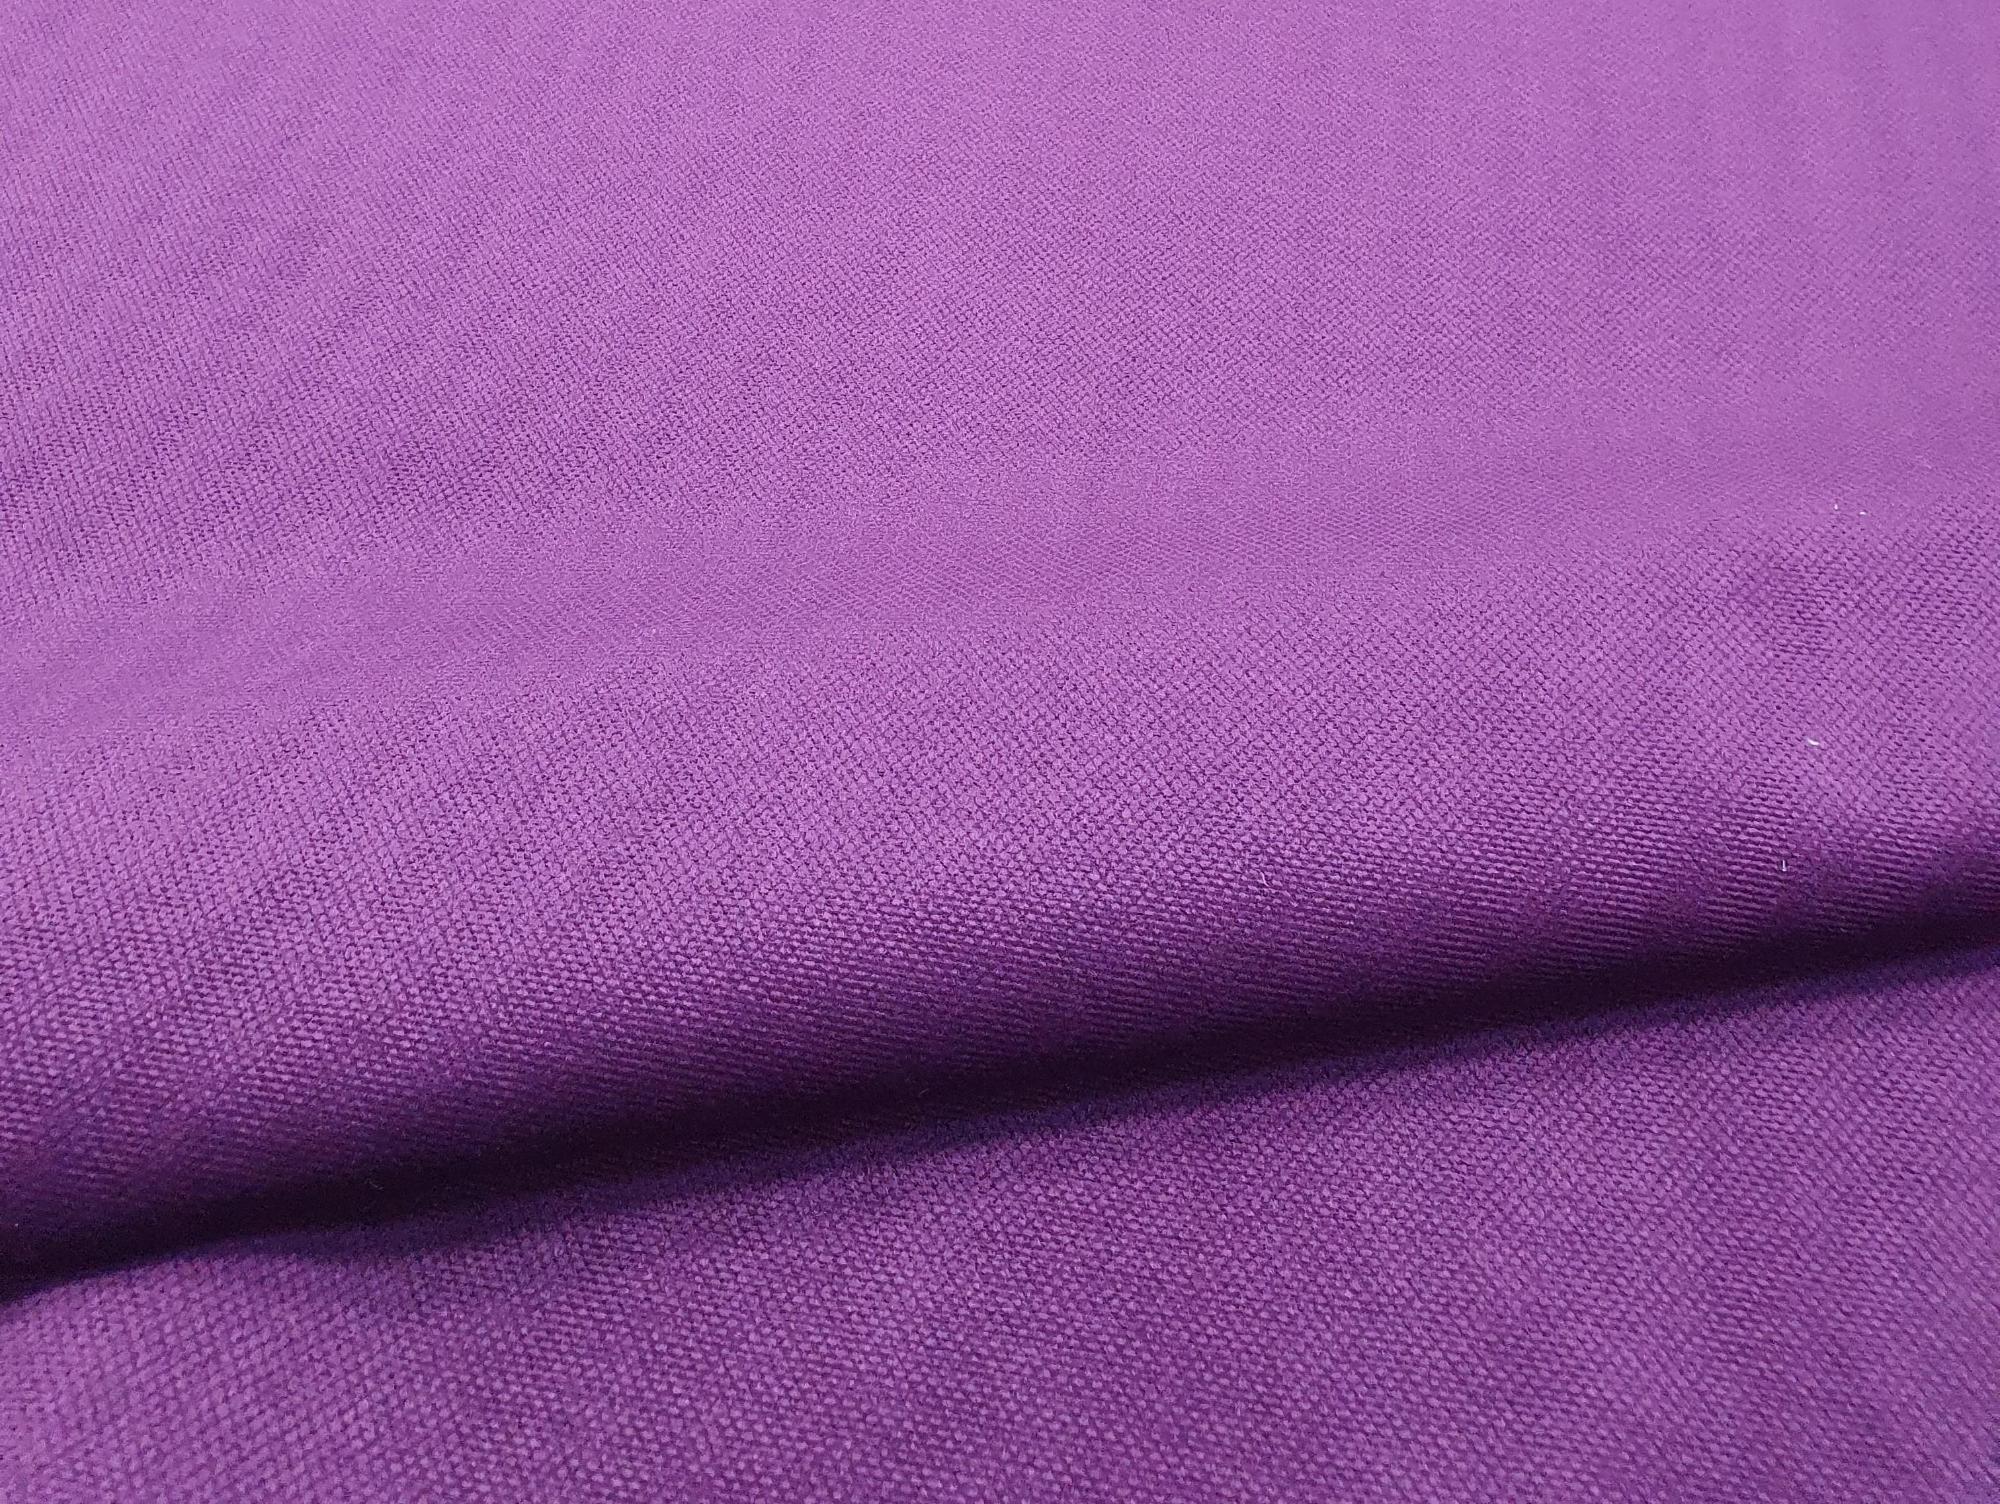 Угловой диван Сенатор правый угол (Фиолетовый\Черный)